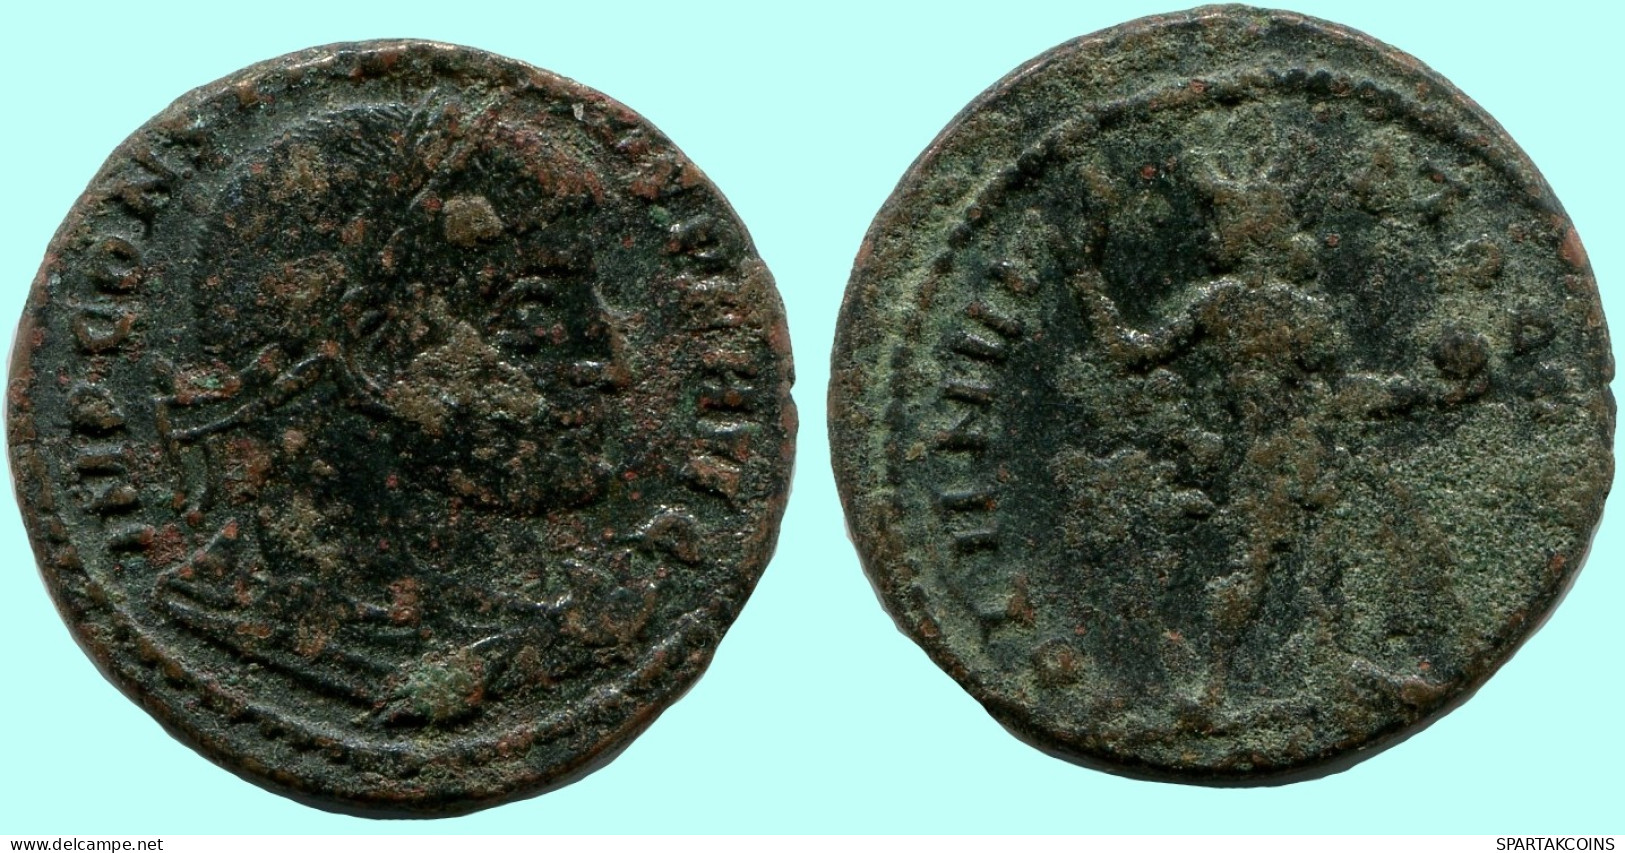 CONSTANTINE I Authentische Antike RÖMISCHEN KAISERZEIT Münze #ANC12269.12.D.A - Der Christlischen Kaiser (307 / 363)